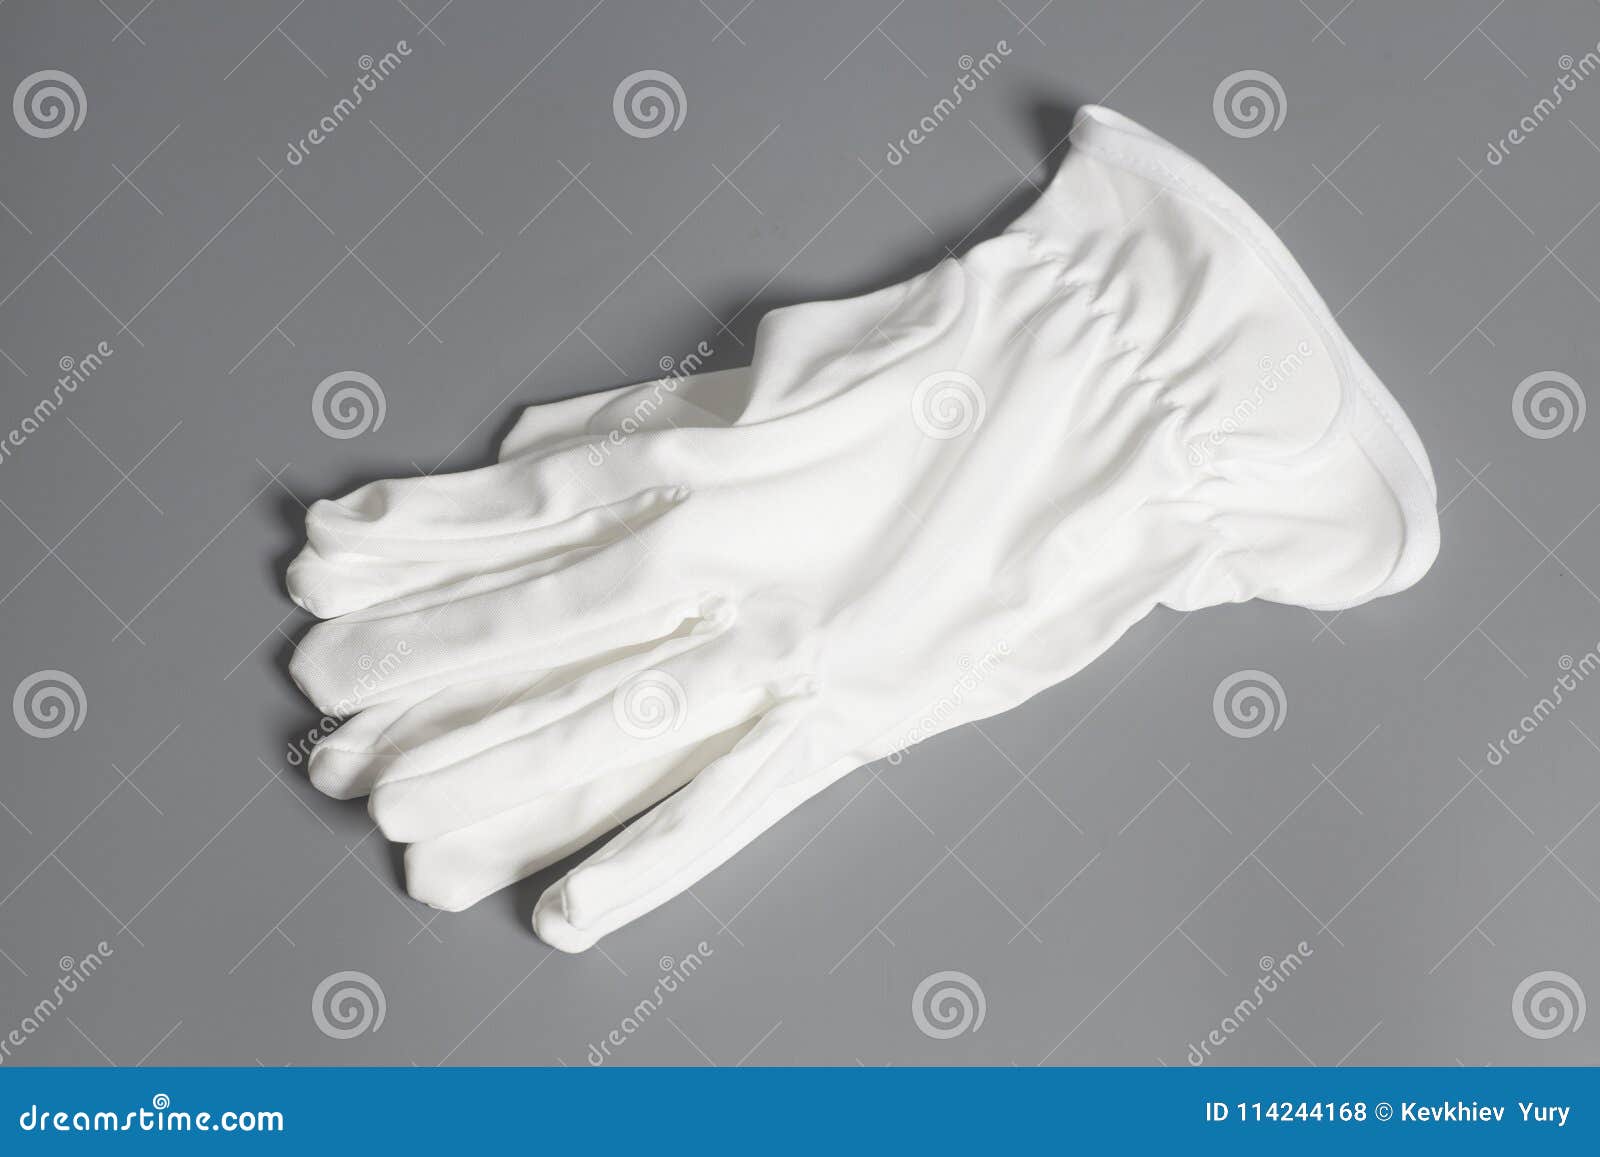 В мешке находятся черные и белые перчатки